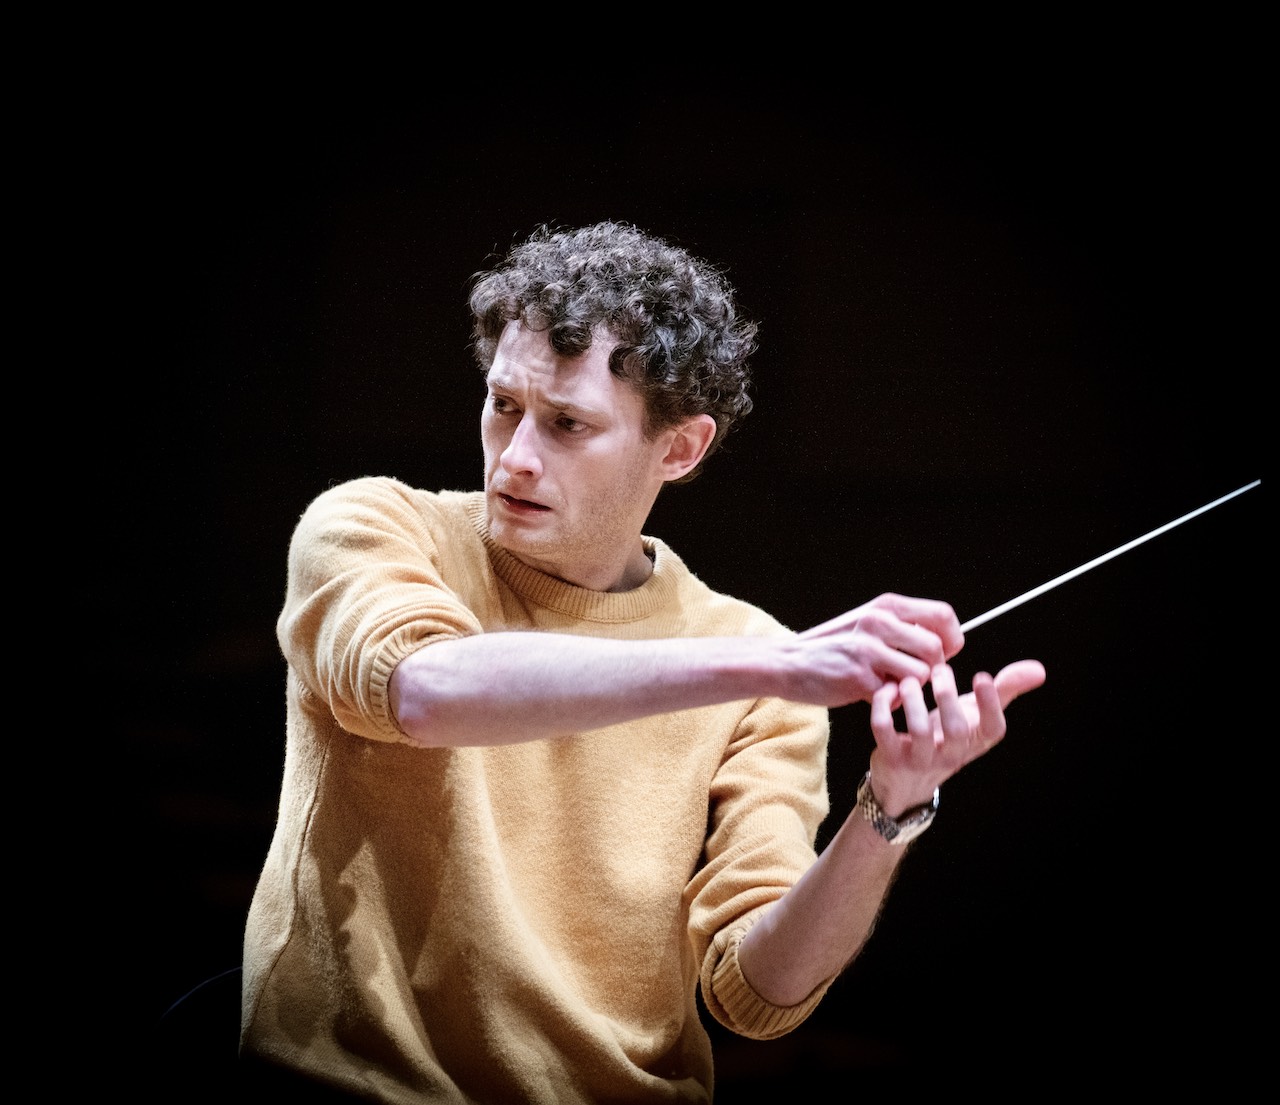 Clément Nonciaux conducting.